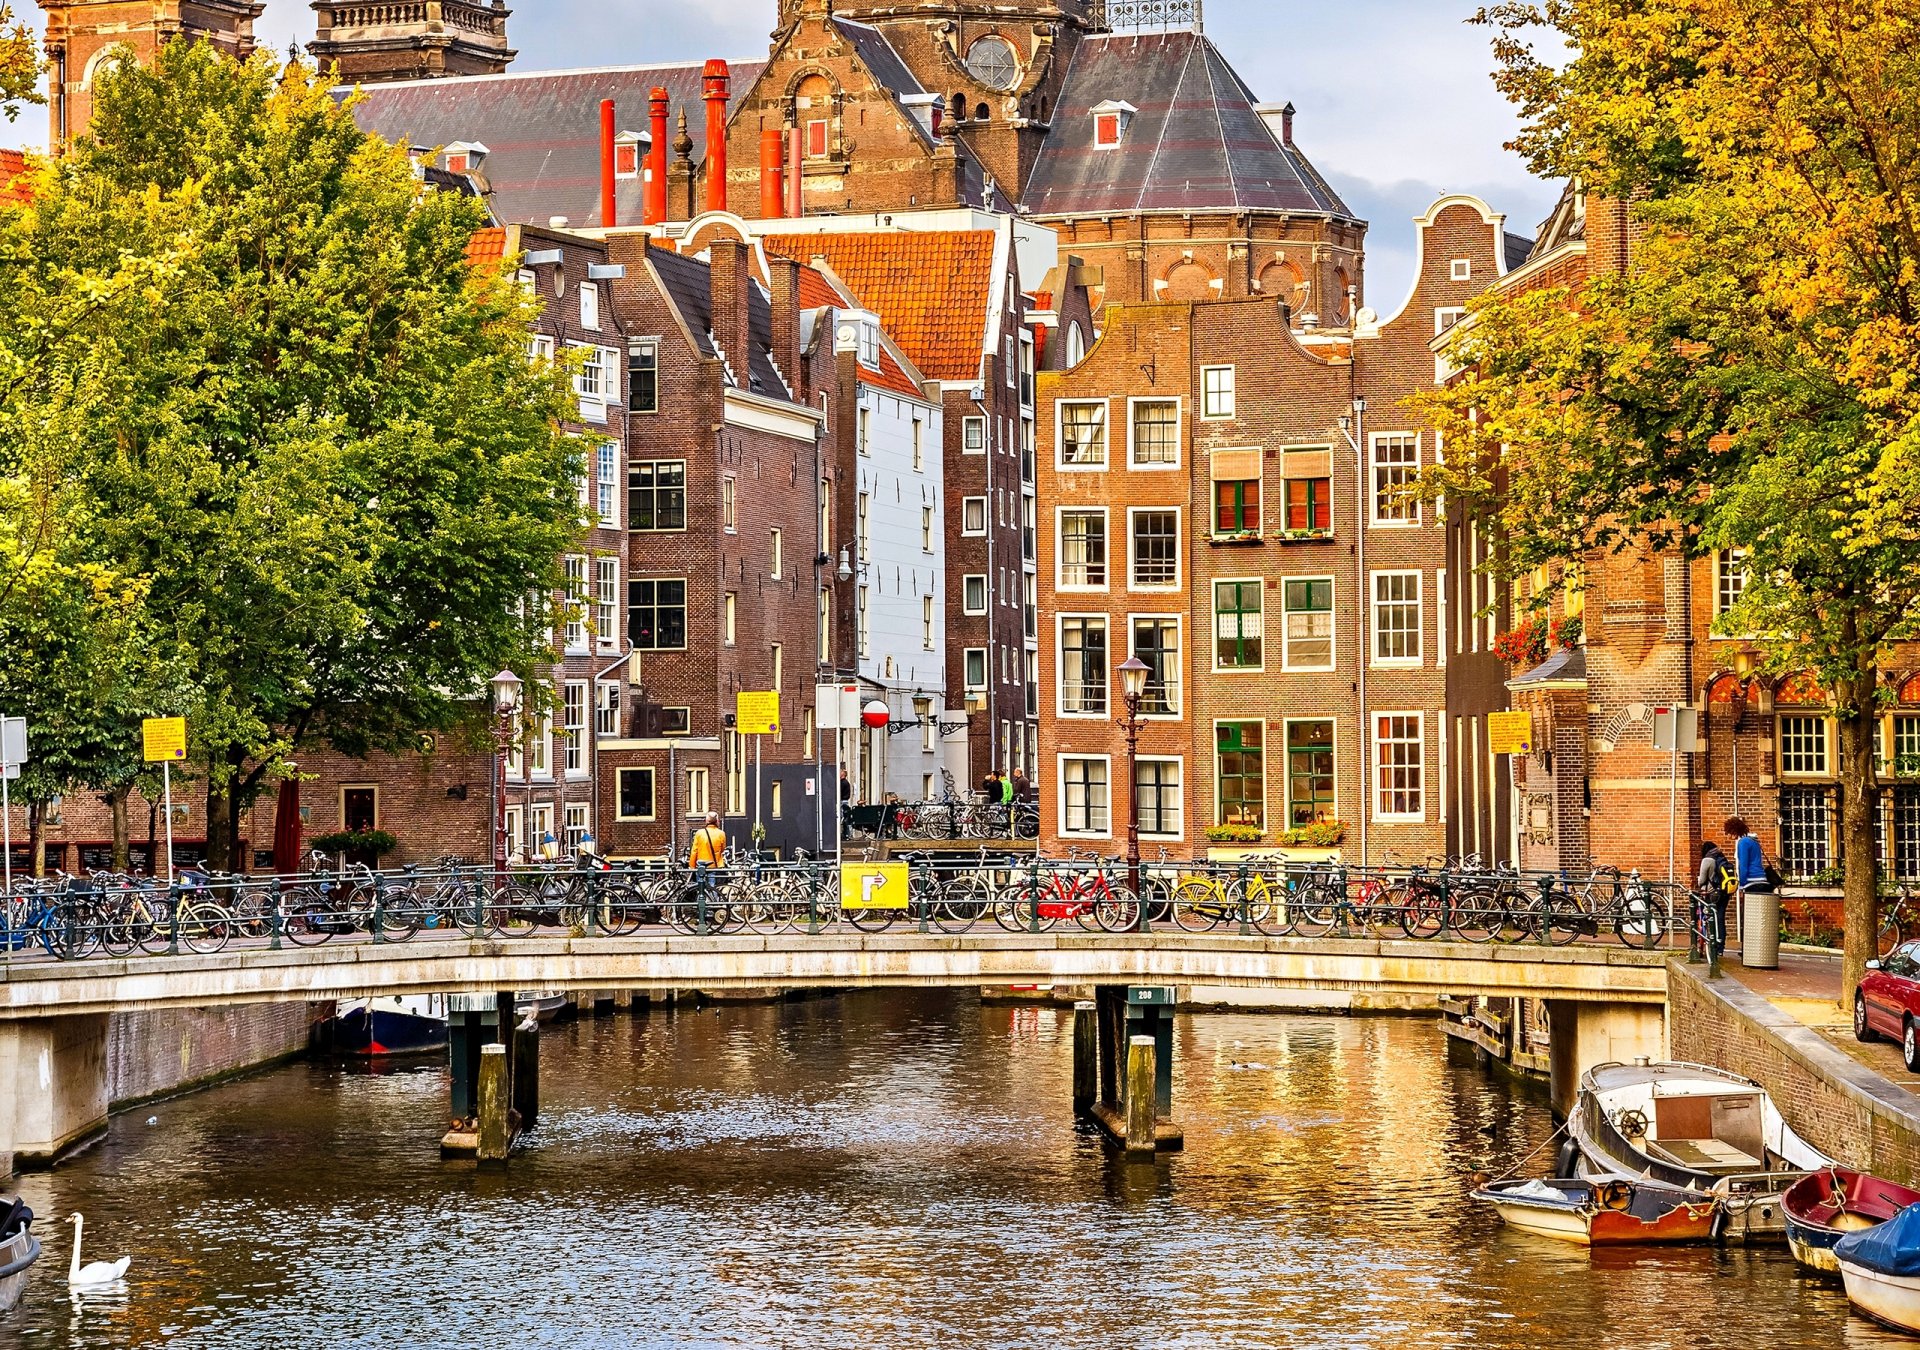 амстердам нидерланды осень деревья город дома здания архитектура мост велосипеды канал река лодки люди